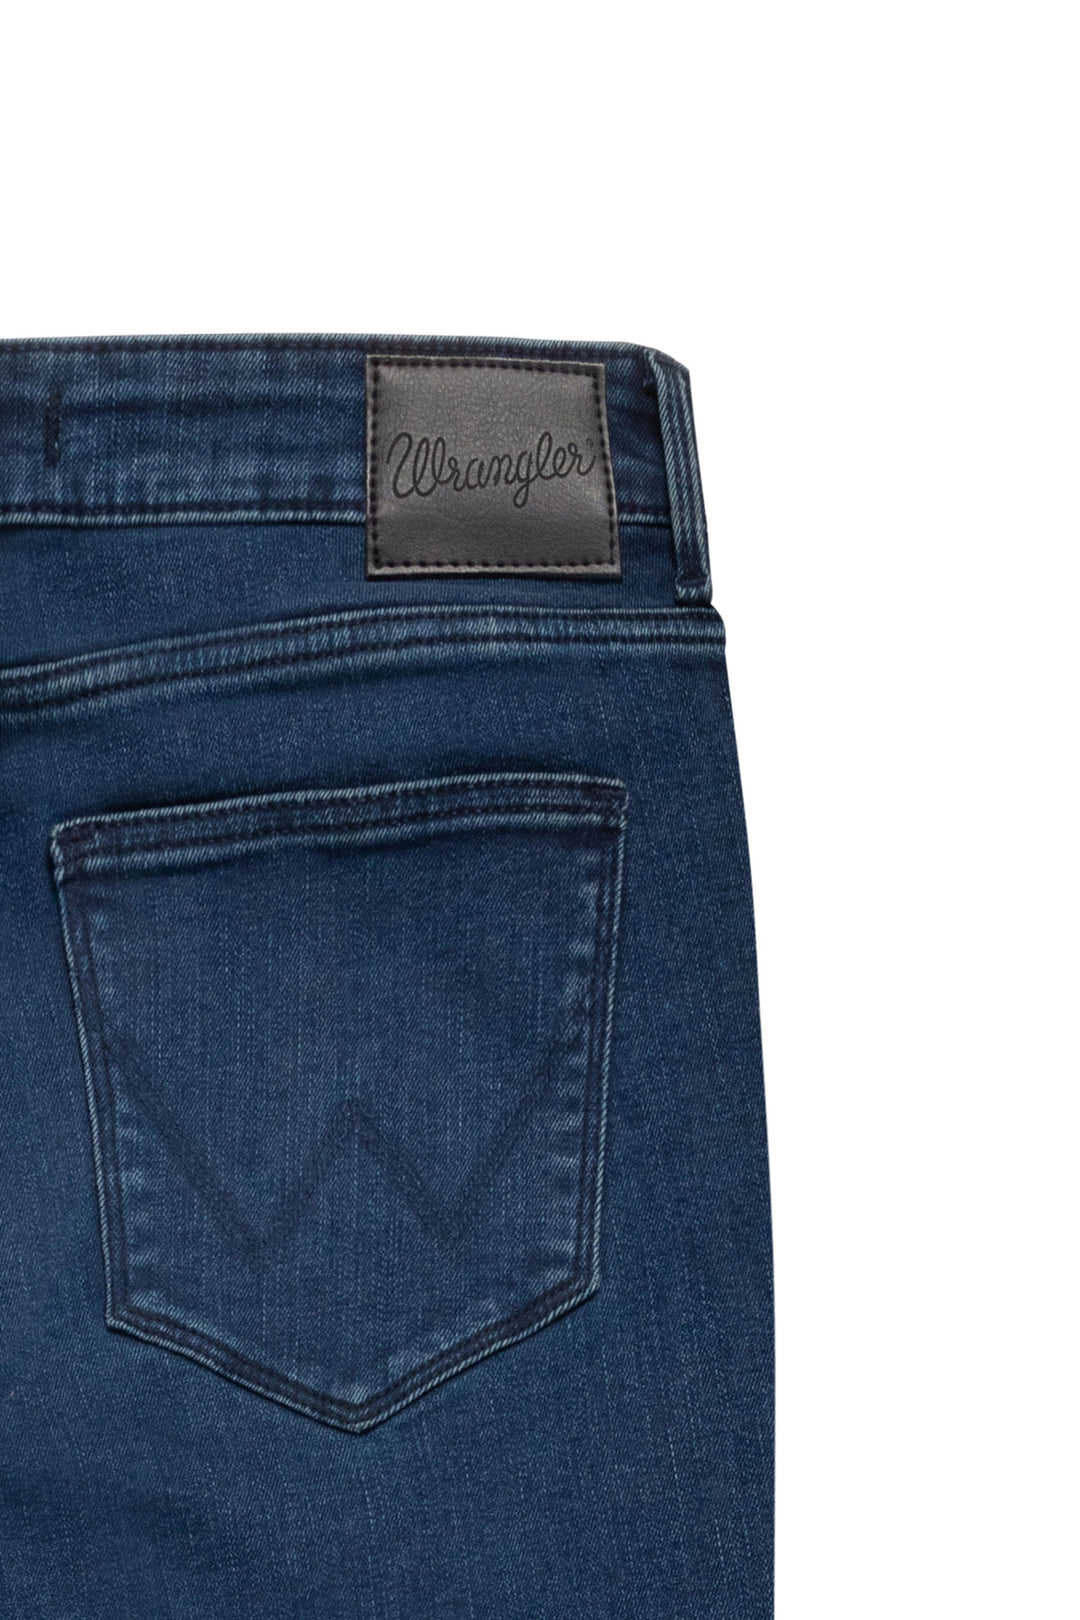 Wrangler - Skinny - Dames Slim-fit Jeans - Blue Lava